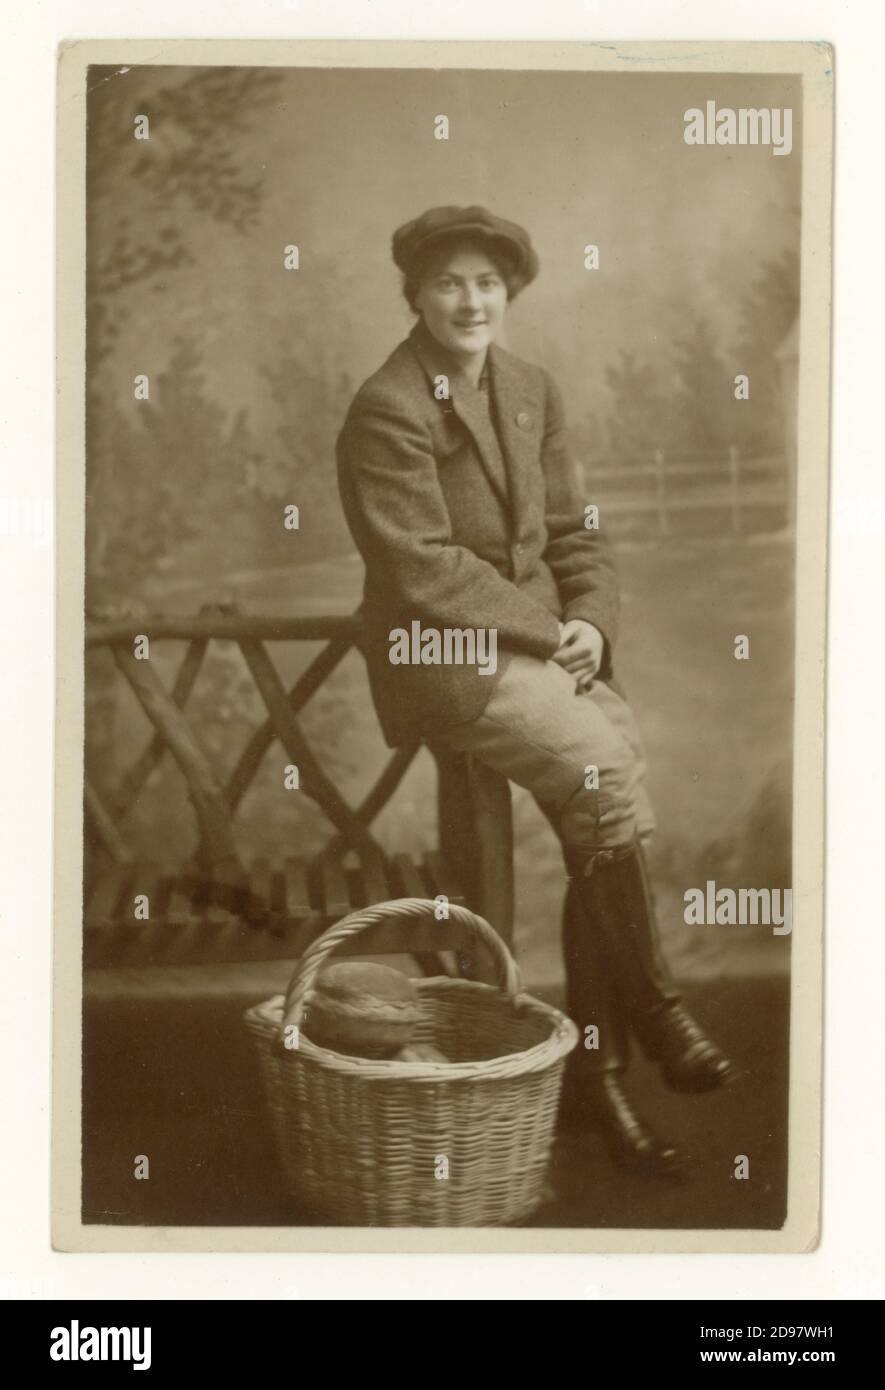 Originale cartolina studio dell'era WW1 di attraente Land Girl nella Women's Land Army (WLA) - indossando braghe, giacca e cappello con un cestino di pane pagnotte, coinvolto nella raccolta del grano, sezione agricola della WLA, datata agosto 1918 sul retro, Regno Unito Foto Stock